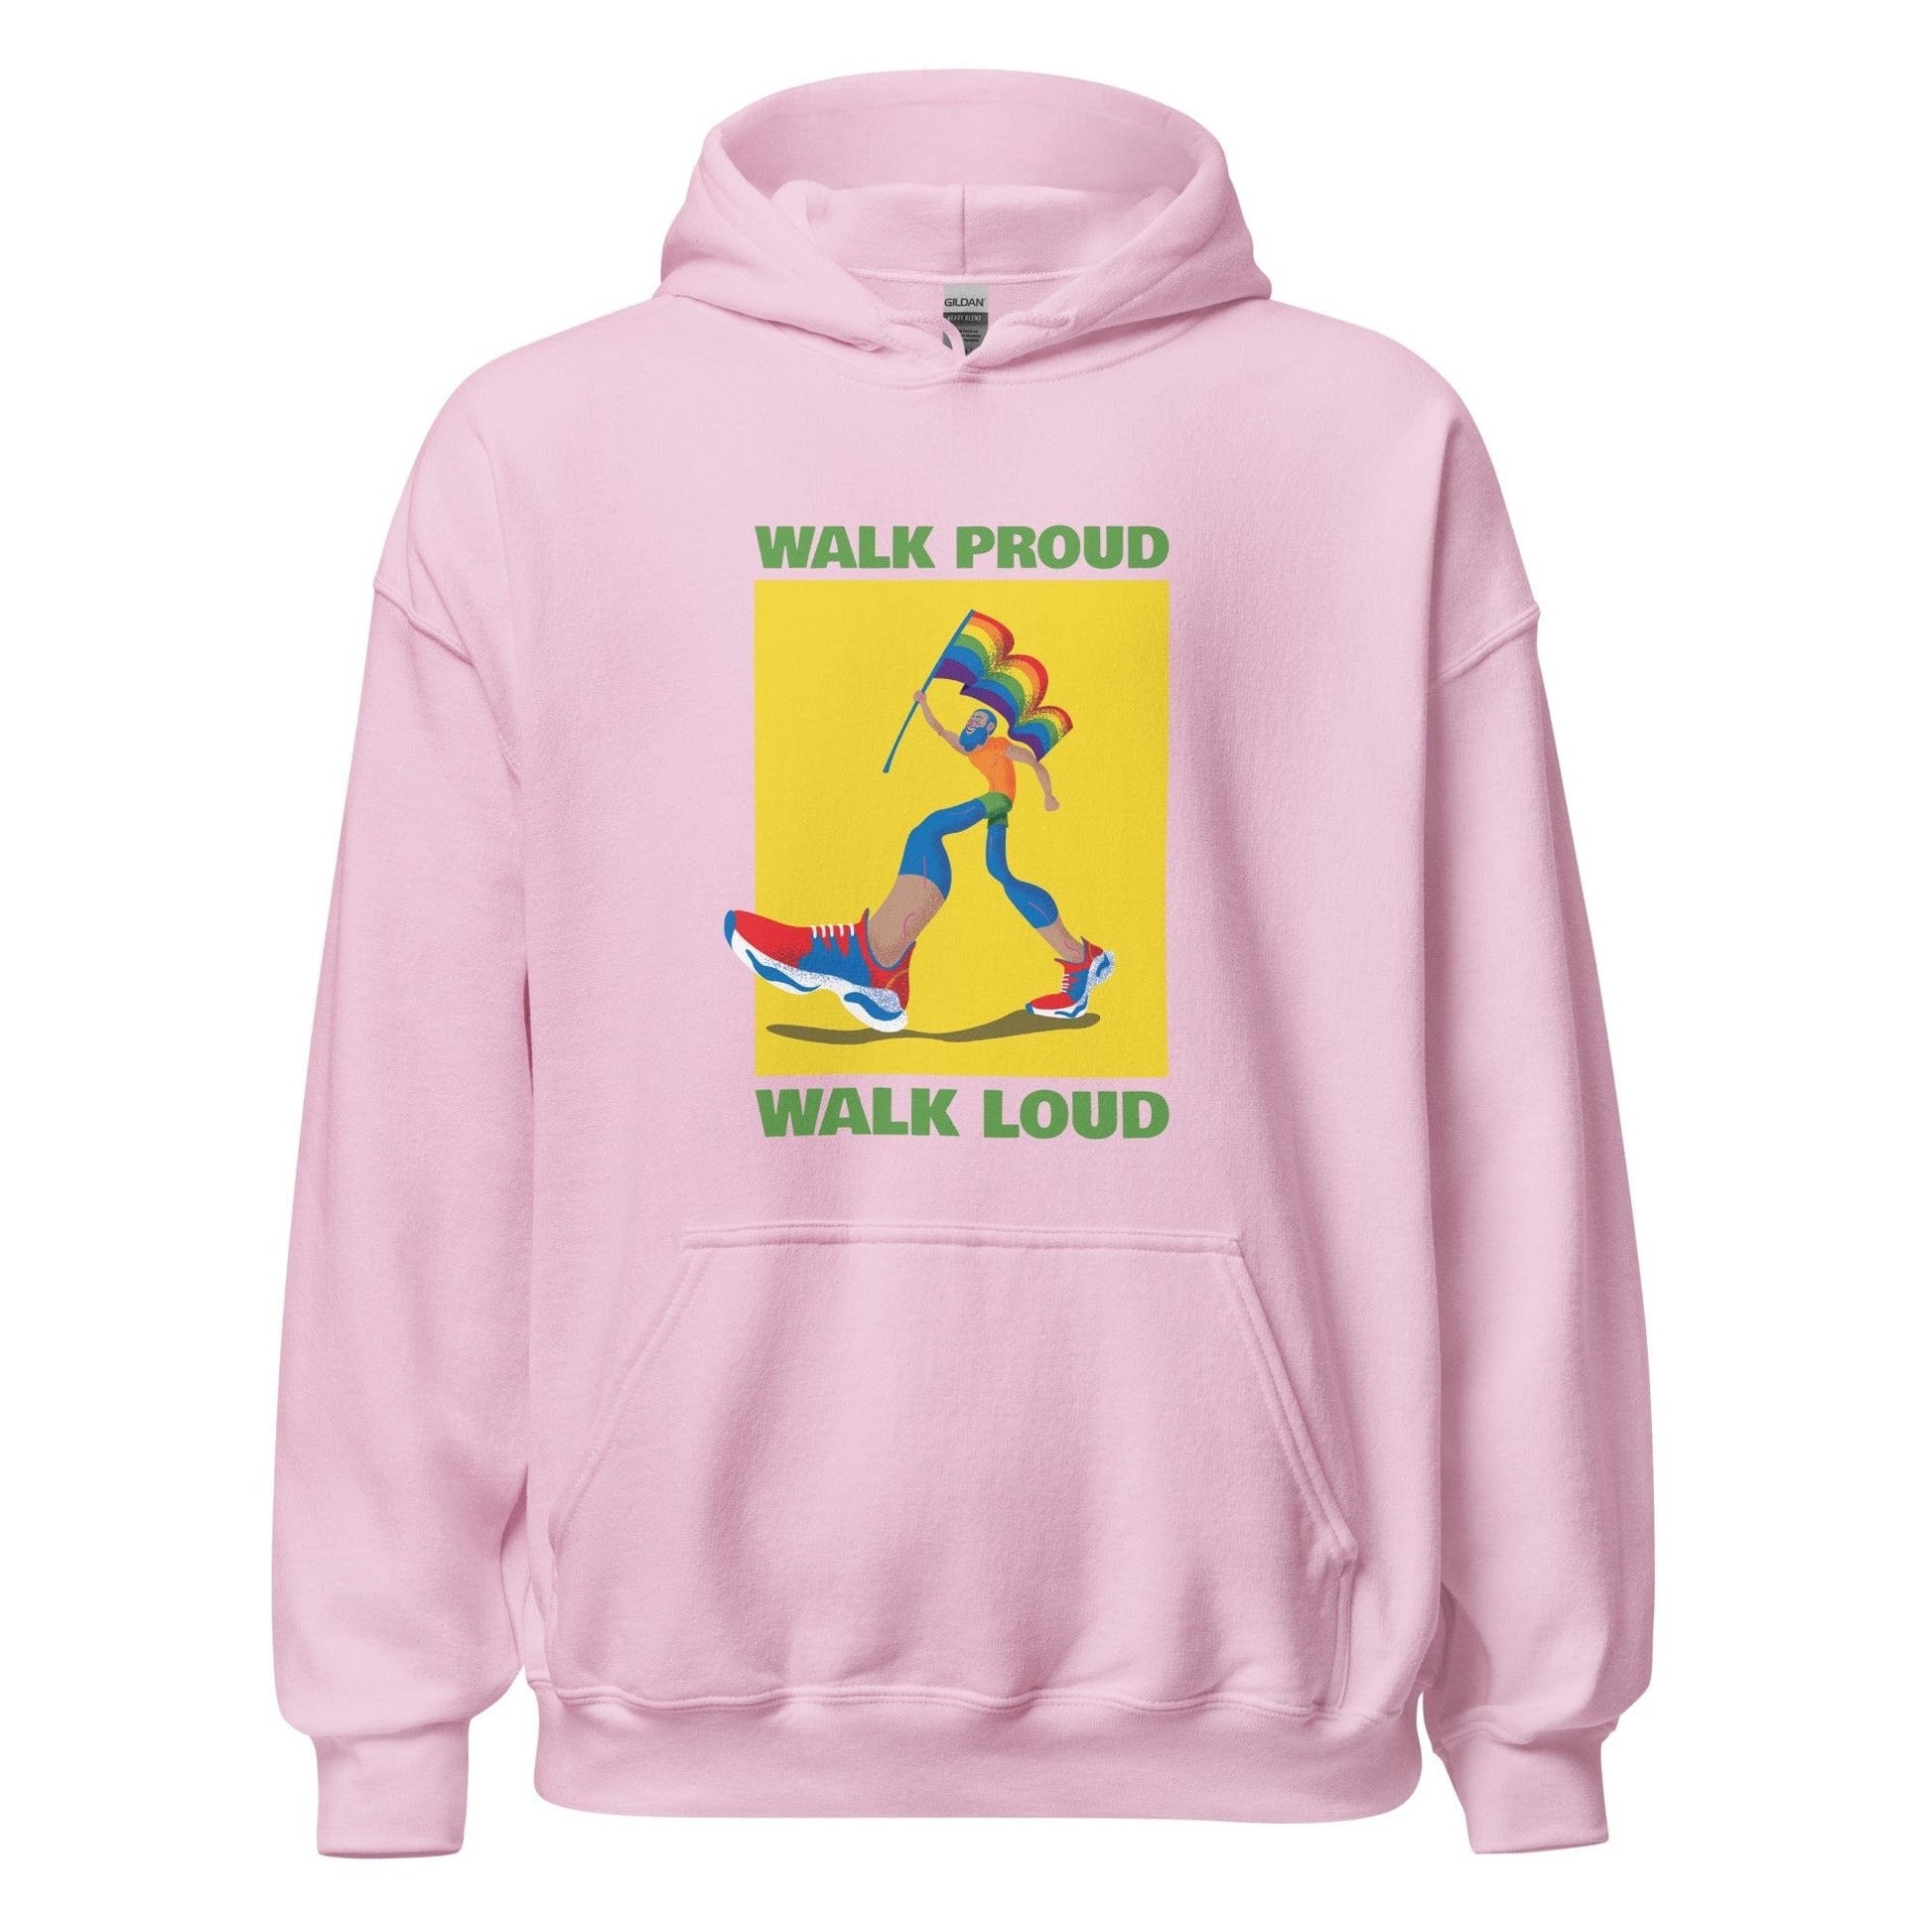 queer-pride-hoodie-walk-proud-walk-loud-lgbtq-gay-apparel-light-pink-front